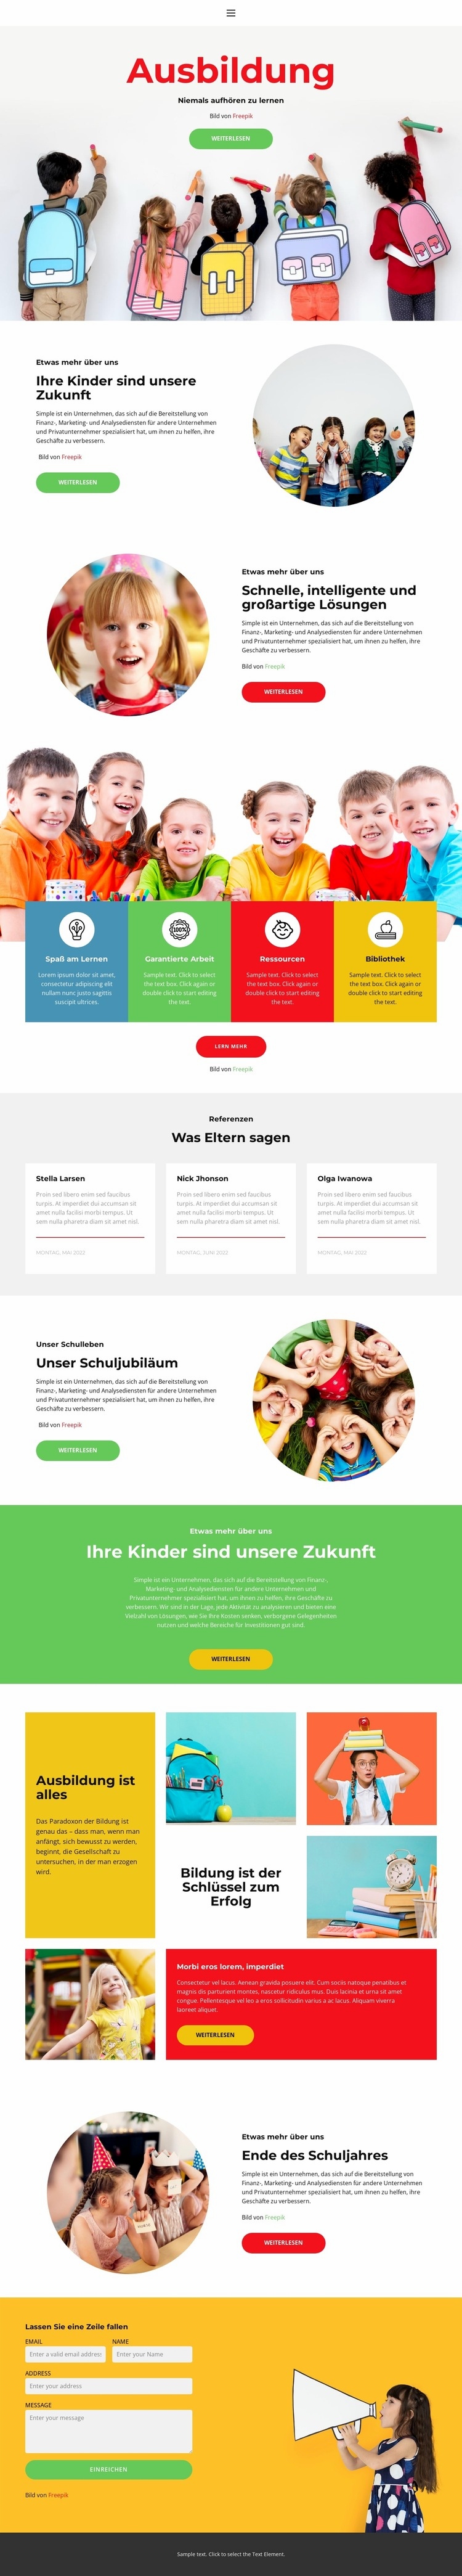 Unser Schulleben Website Builder-Vorlagen